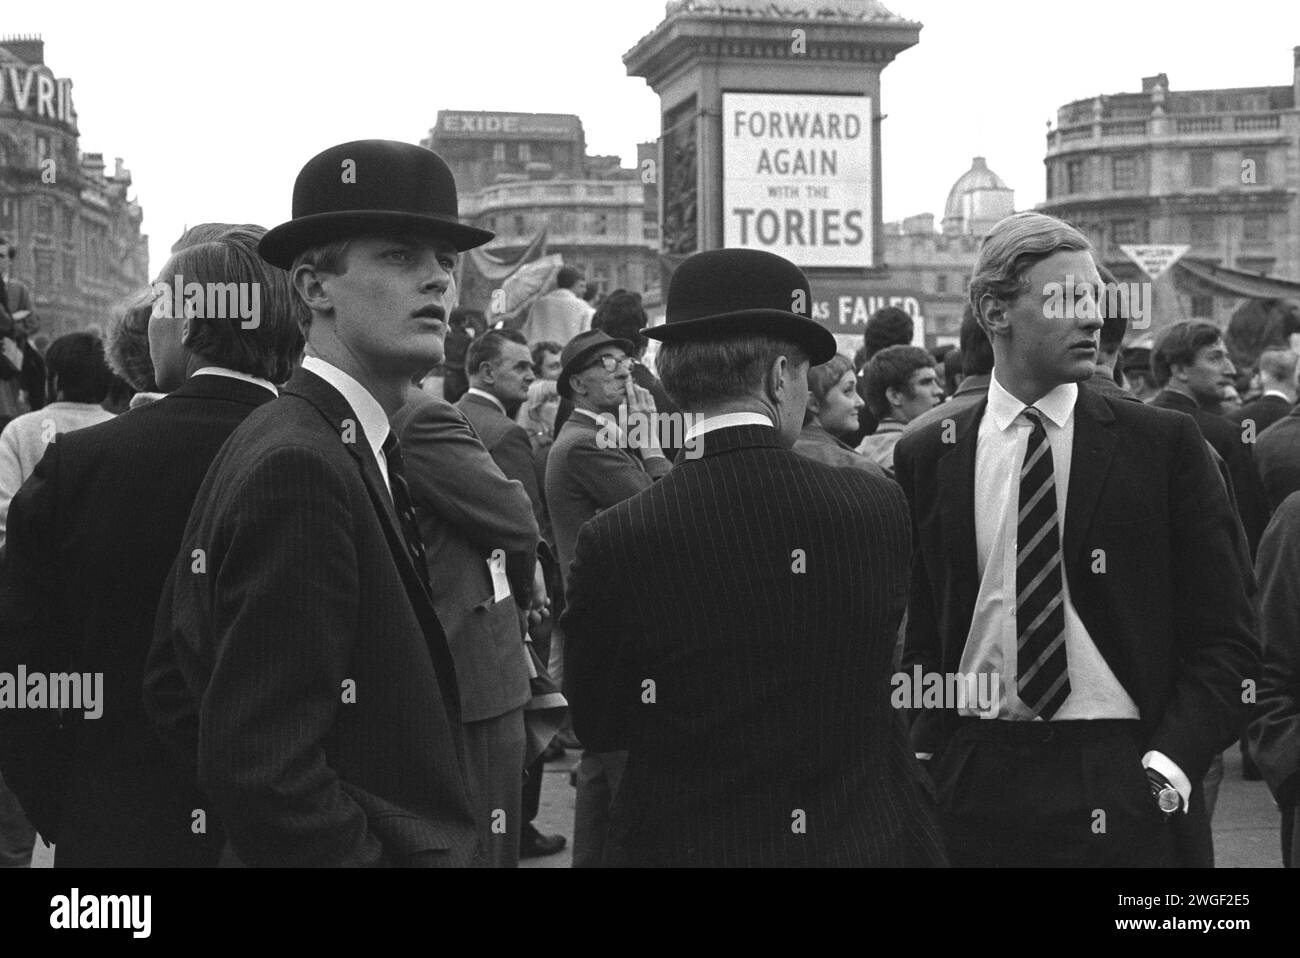 Giovani conservatori, al raduno politico di Trafalgar Square, Londra anni '1960 Regno Unito. Bowler ha attaccato, indossato e indossato i loro vecchi legami scolastici, quattro giovani “City Gent” partecipano a un raduno del partito conservatore “Forward Again with the Tories” in vista delle elezioni generali del 1970. Inghilterra 1969. HOMER SYKES Foto Stock